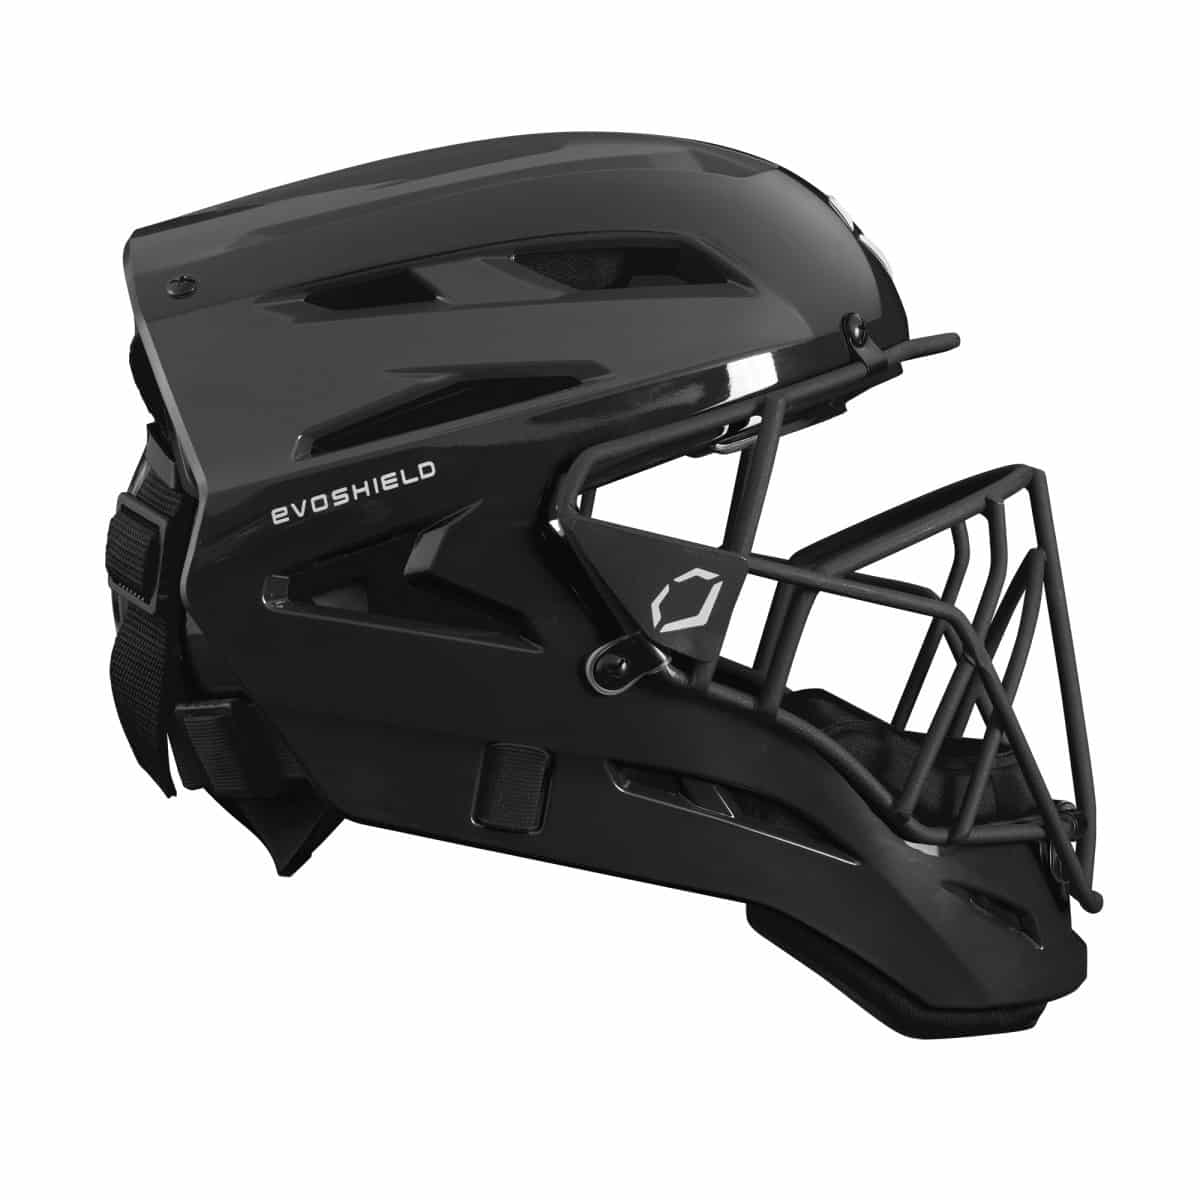 evoshield catchers gear side view of helmet